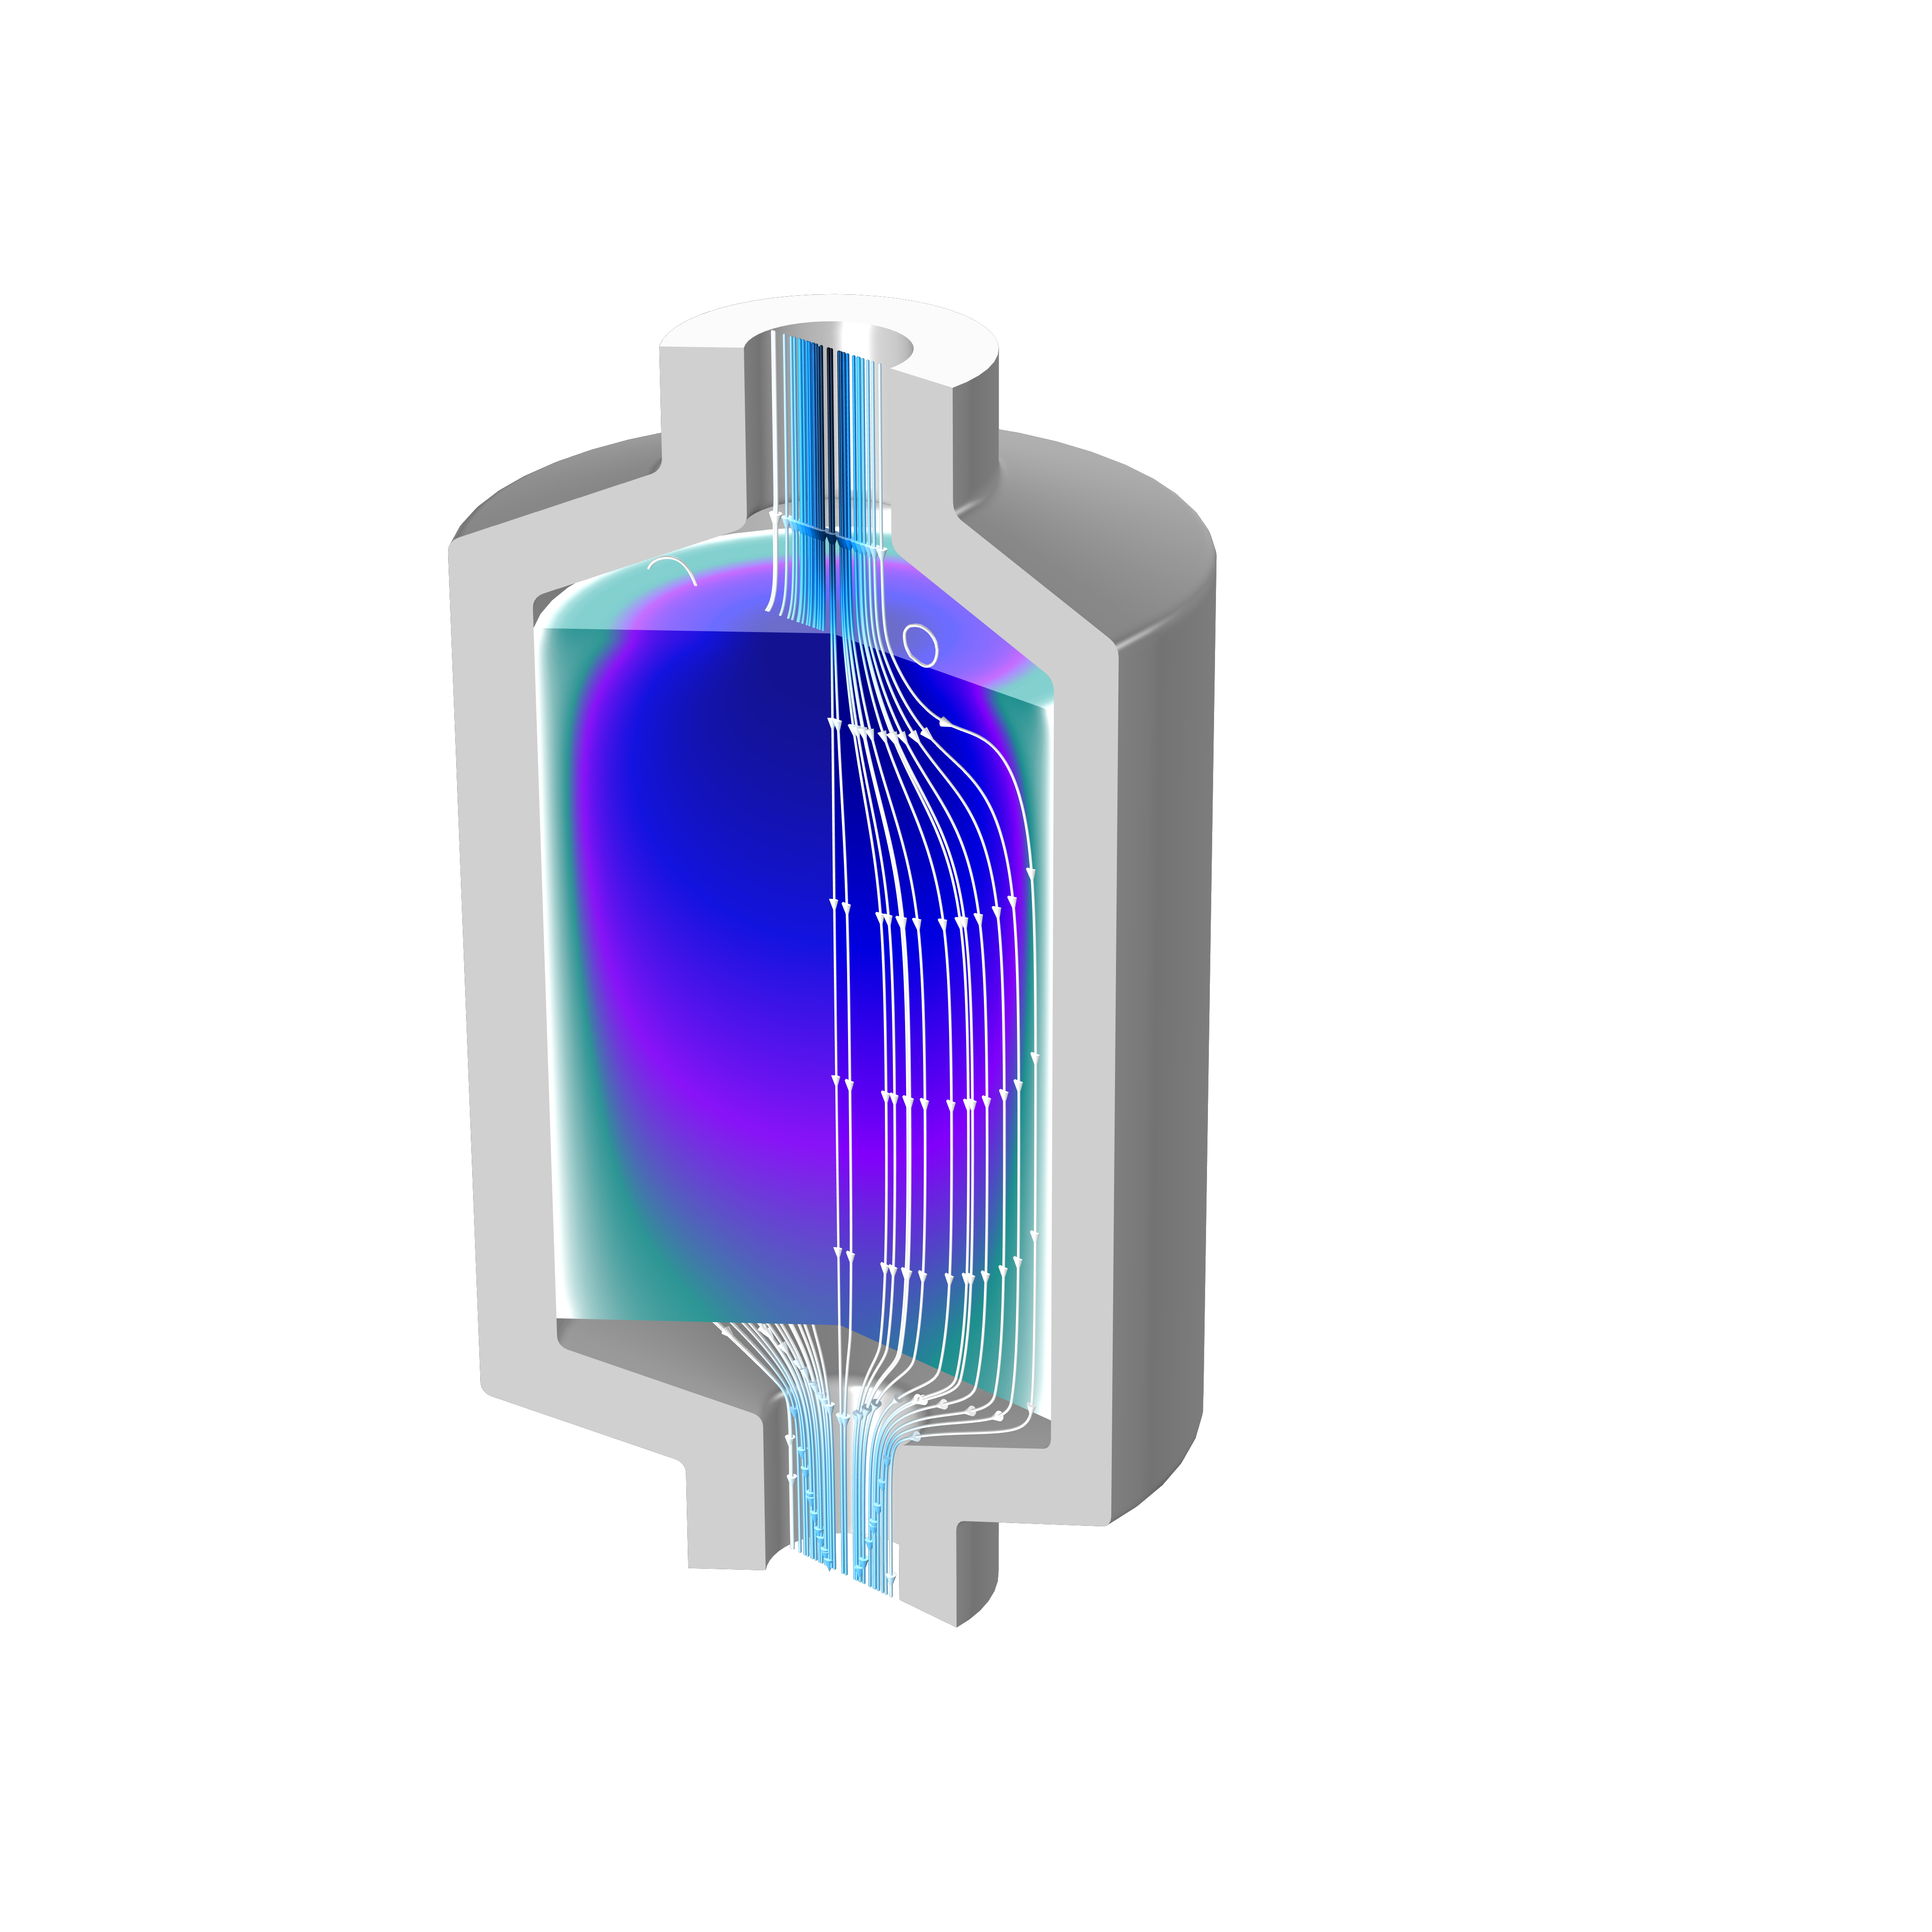 蓝绿色，紫色和蓝色梯度和白色流线显示的具有多孔介质流量的灰色储罐模型。